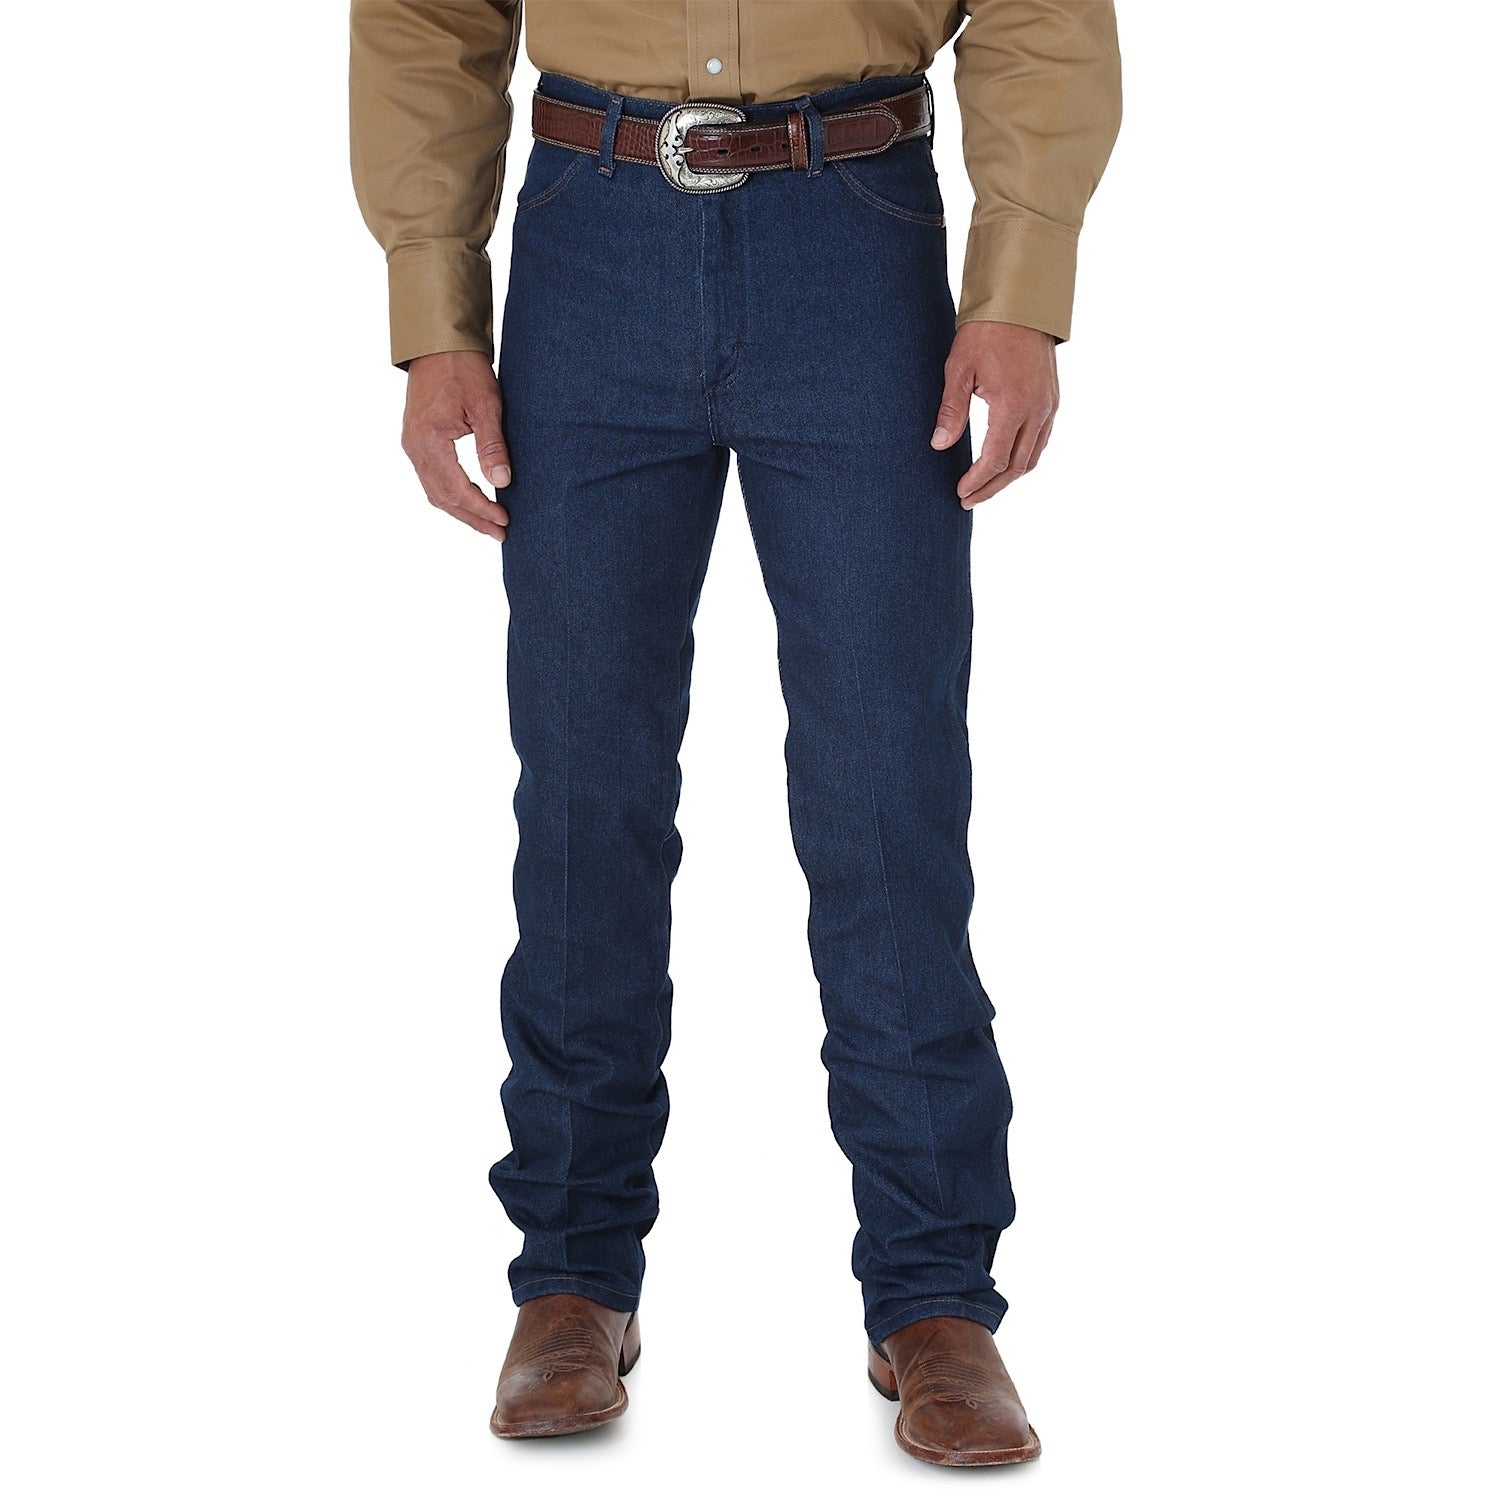 Buy Wrangler Mens Premium Cowboy Cut Regular Stretch Slim Fit Jean - 34